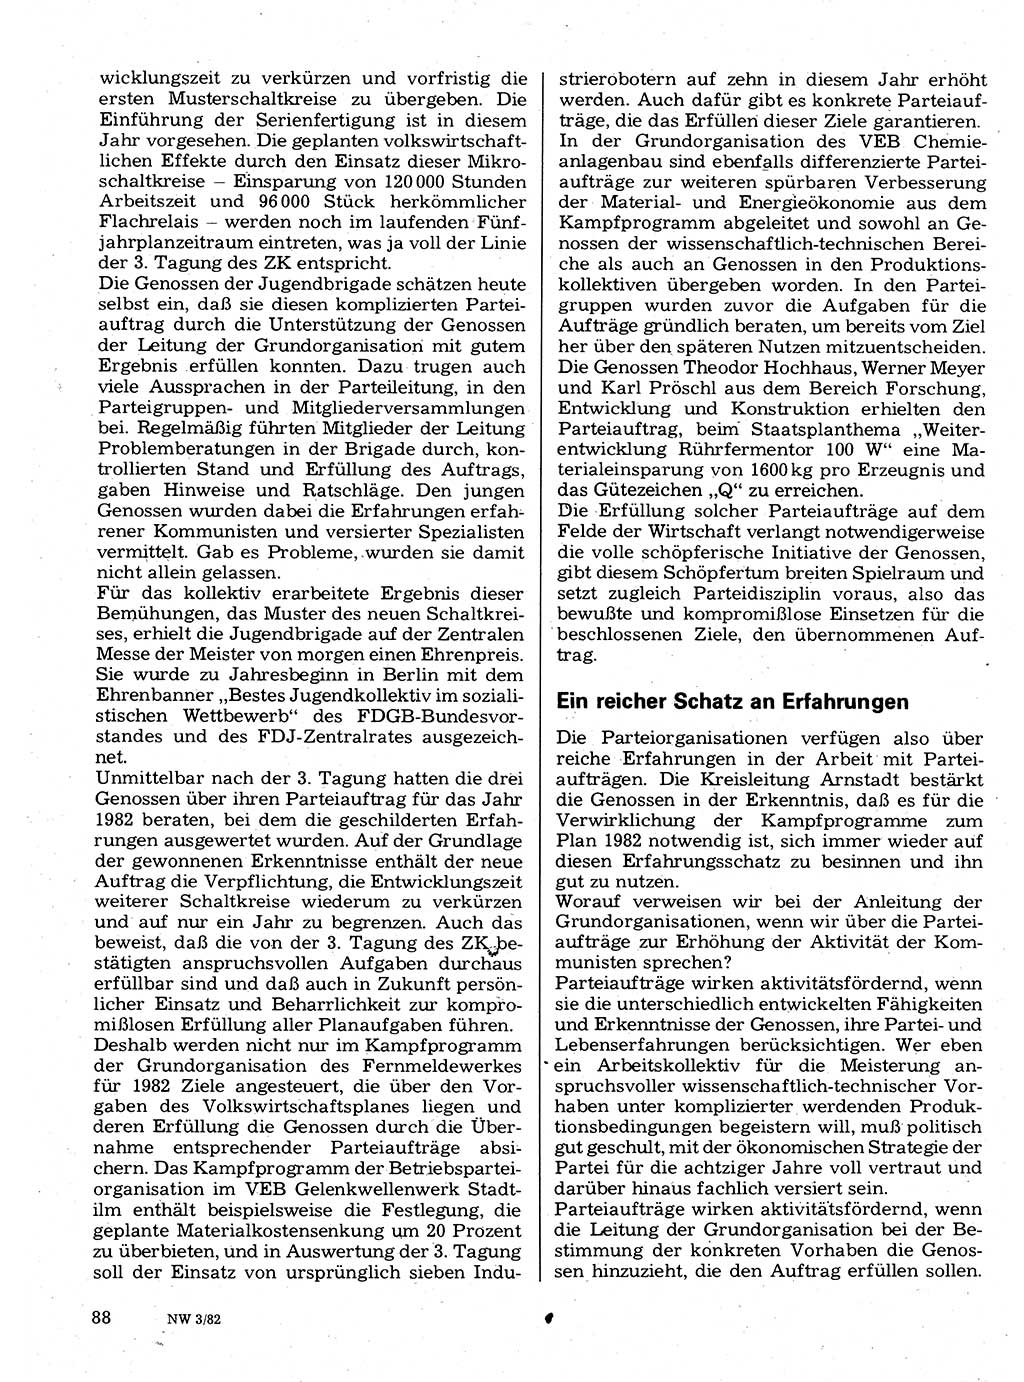 Neuer Weg (NW), Organ des Zentralkomitees (ZK) der SED (Sozialistische Einheitspartei Deutschlands) fÃ¼r Fragen des Parteilebens, 37. Jahrgang [Deutsche Demokratische Republik (DDR)] 1982, Seite 88 (NW ZK SED DDR 1982, S. 88)